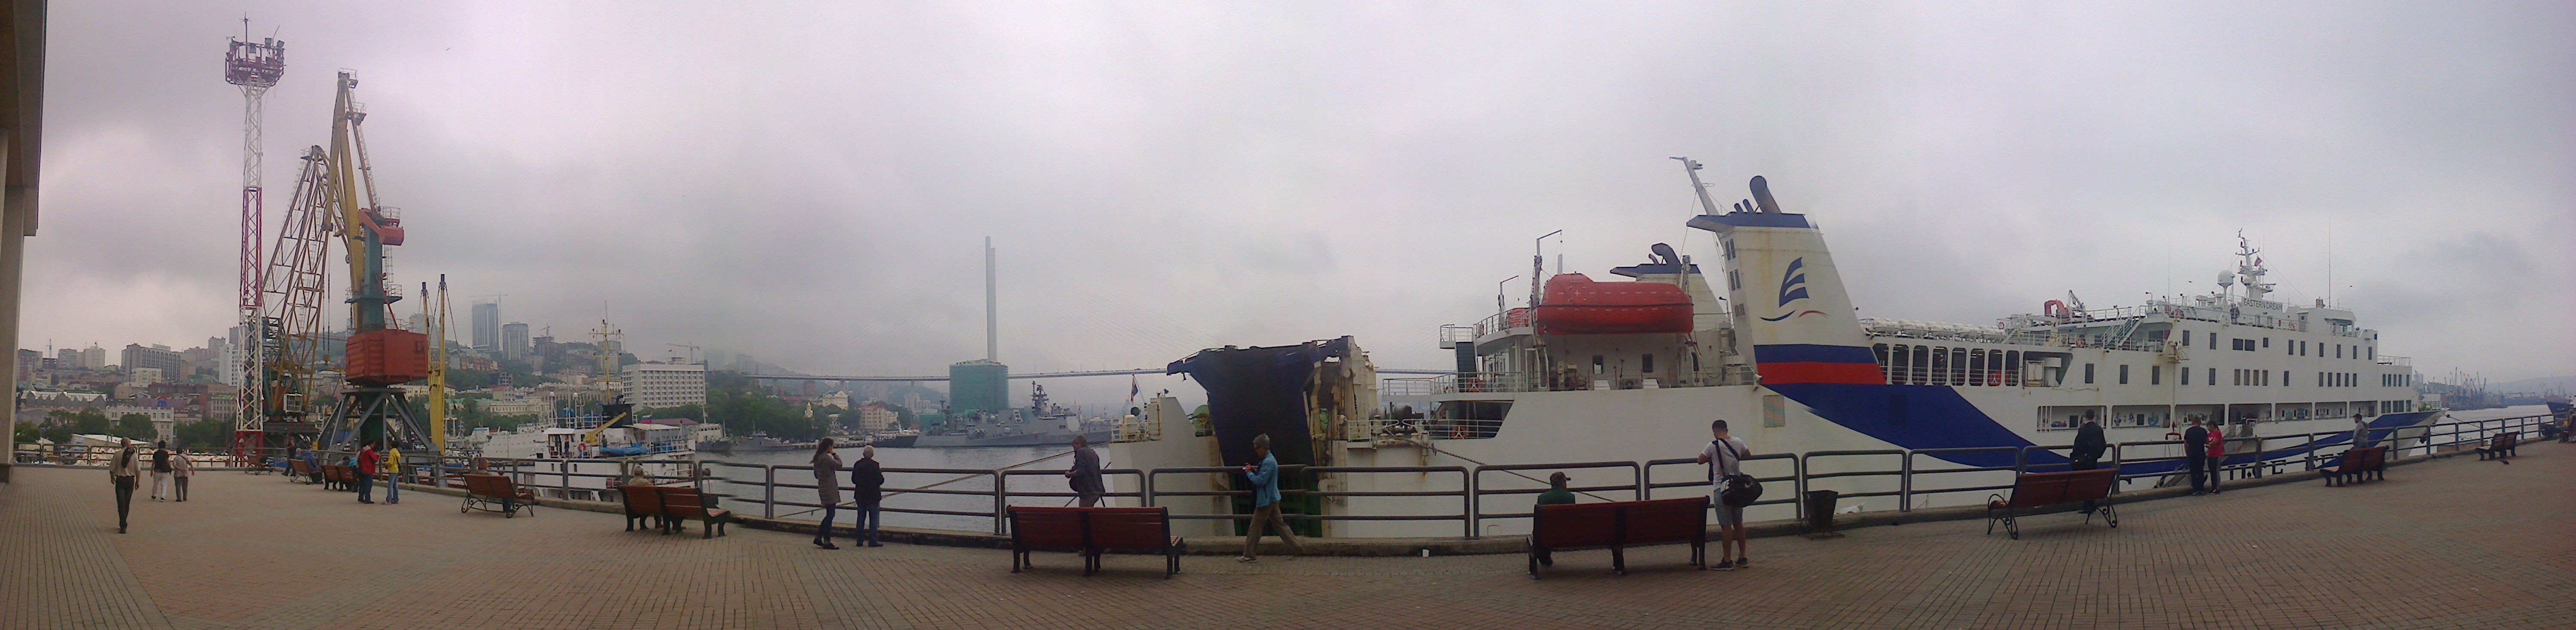 The Vladivostok-Donghae-Sakaiminato ferry moored in Vladivostok habour